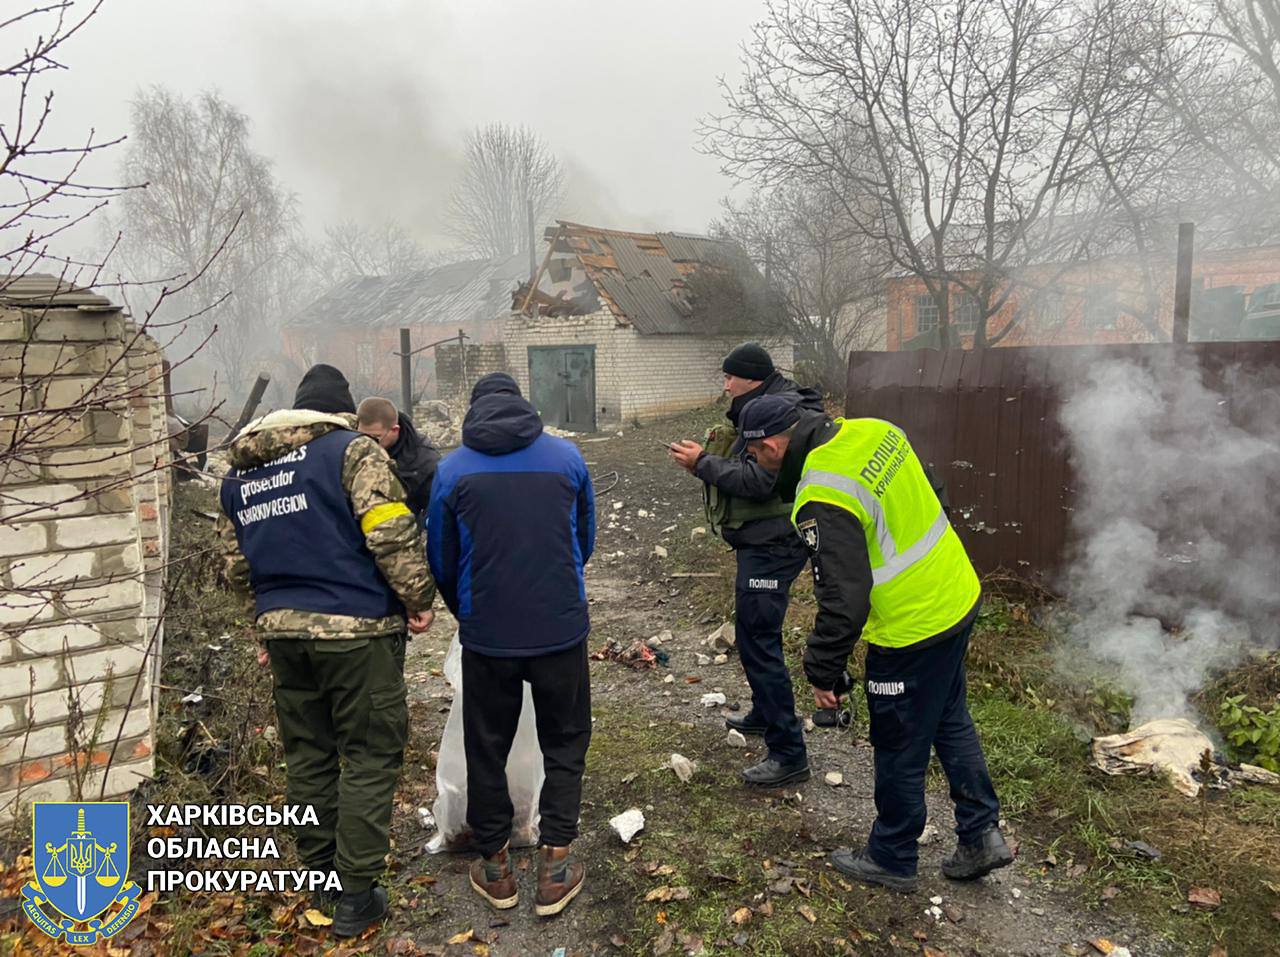 Харьковская областная прокуратура сообщает о том, что в Купянске во время эксгумации оккупанты открыли огонь по городу - погибла женщина, ранен правоохранитель